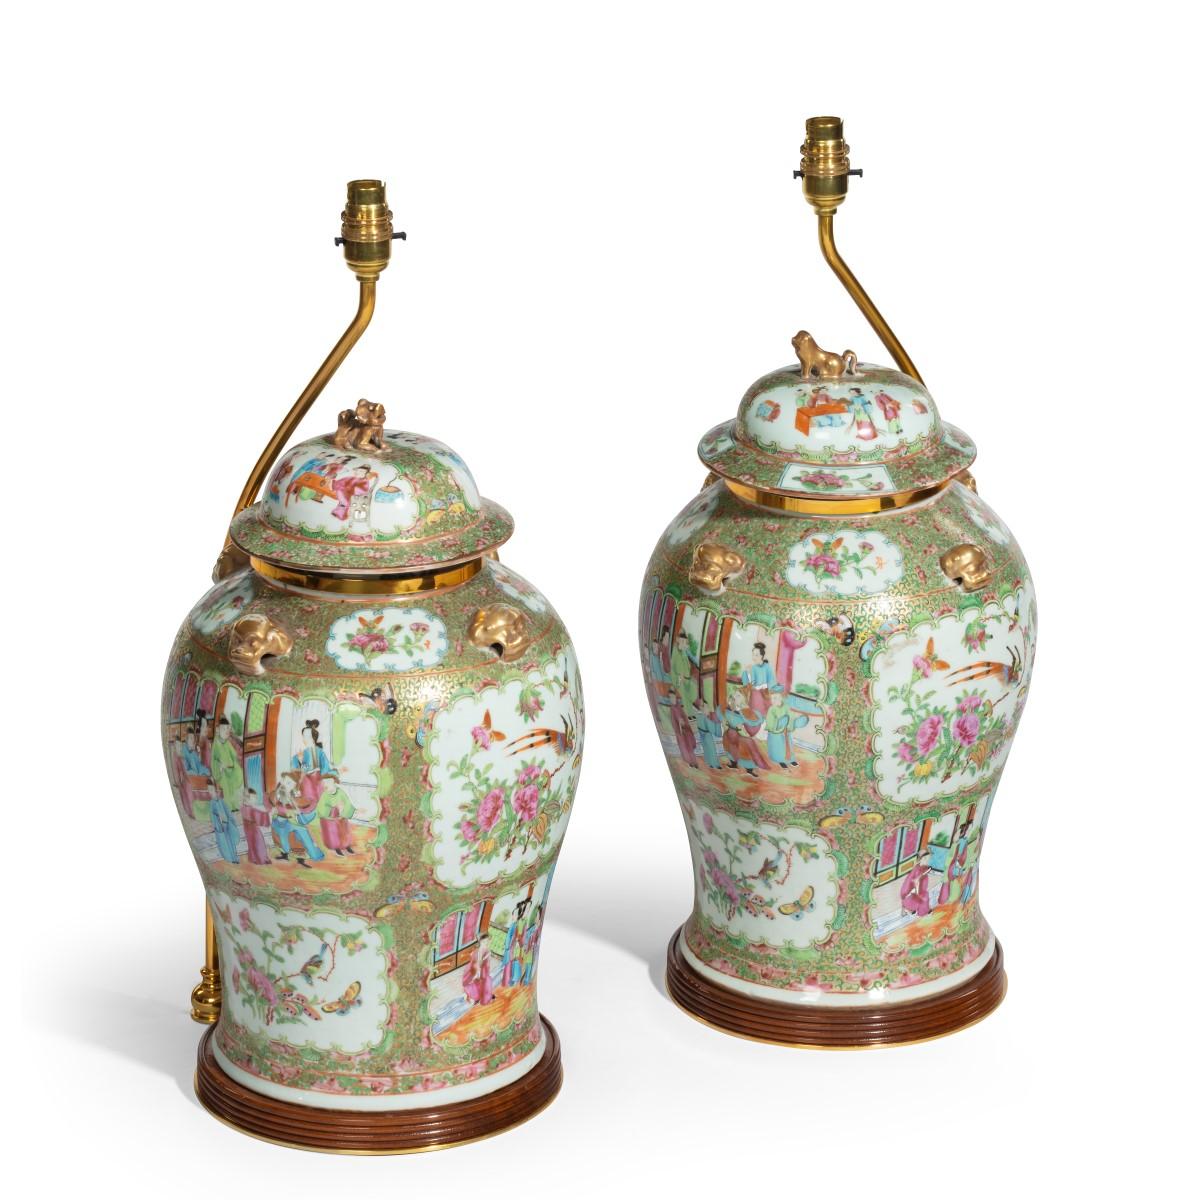 Une paire de vases et couvercles chinois, chacun de forme balustre avec un couvercle bombé et un fleuron Fo-dog stylisé et doré et des poignées, décorés en émaux colorés et dorés avec de nombreux panneaux montrant des scènes de cour, des oiseaux et